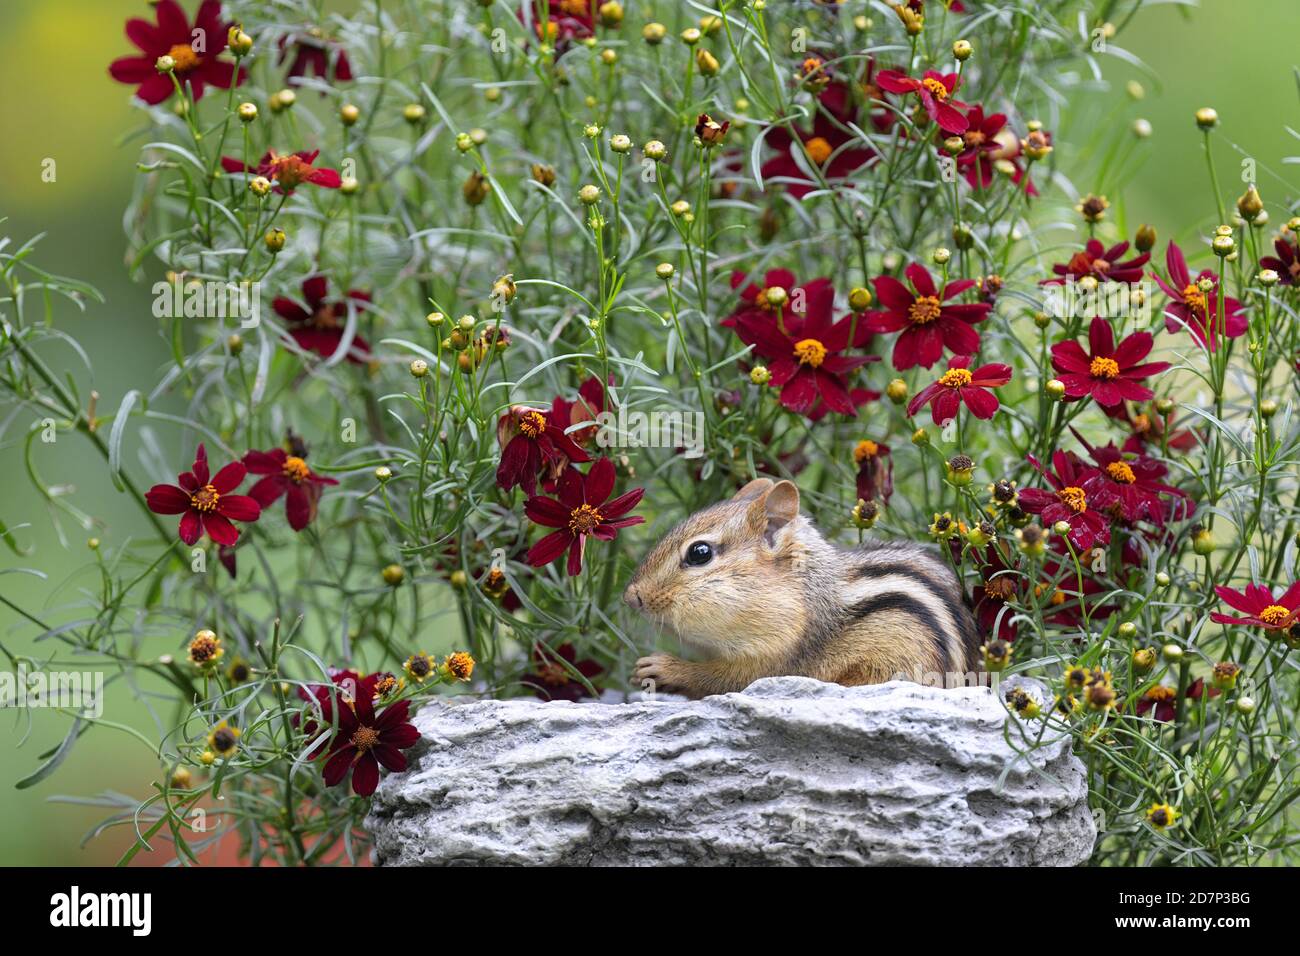 Un chipmunk oriental mangeant parmi quelques fleurs rouges Banque D'Images